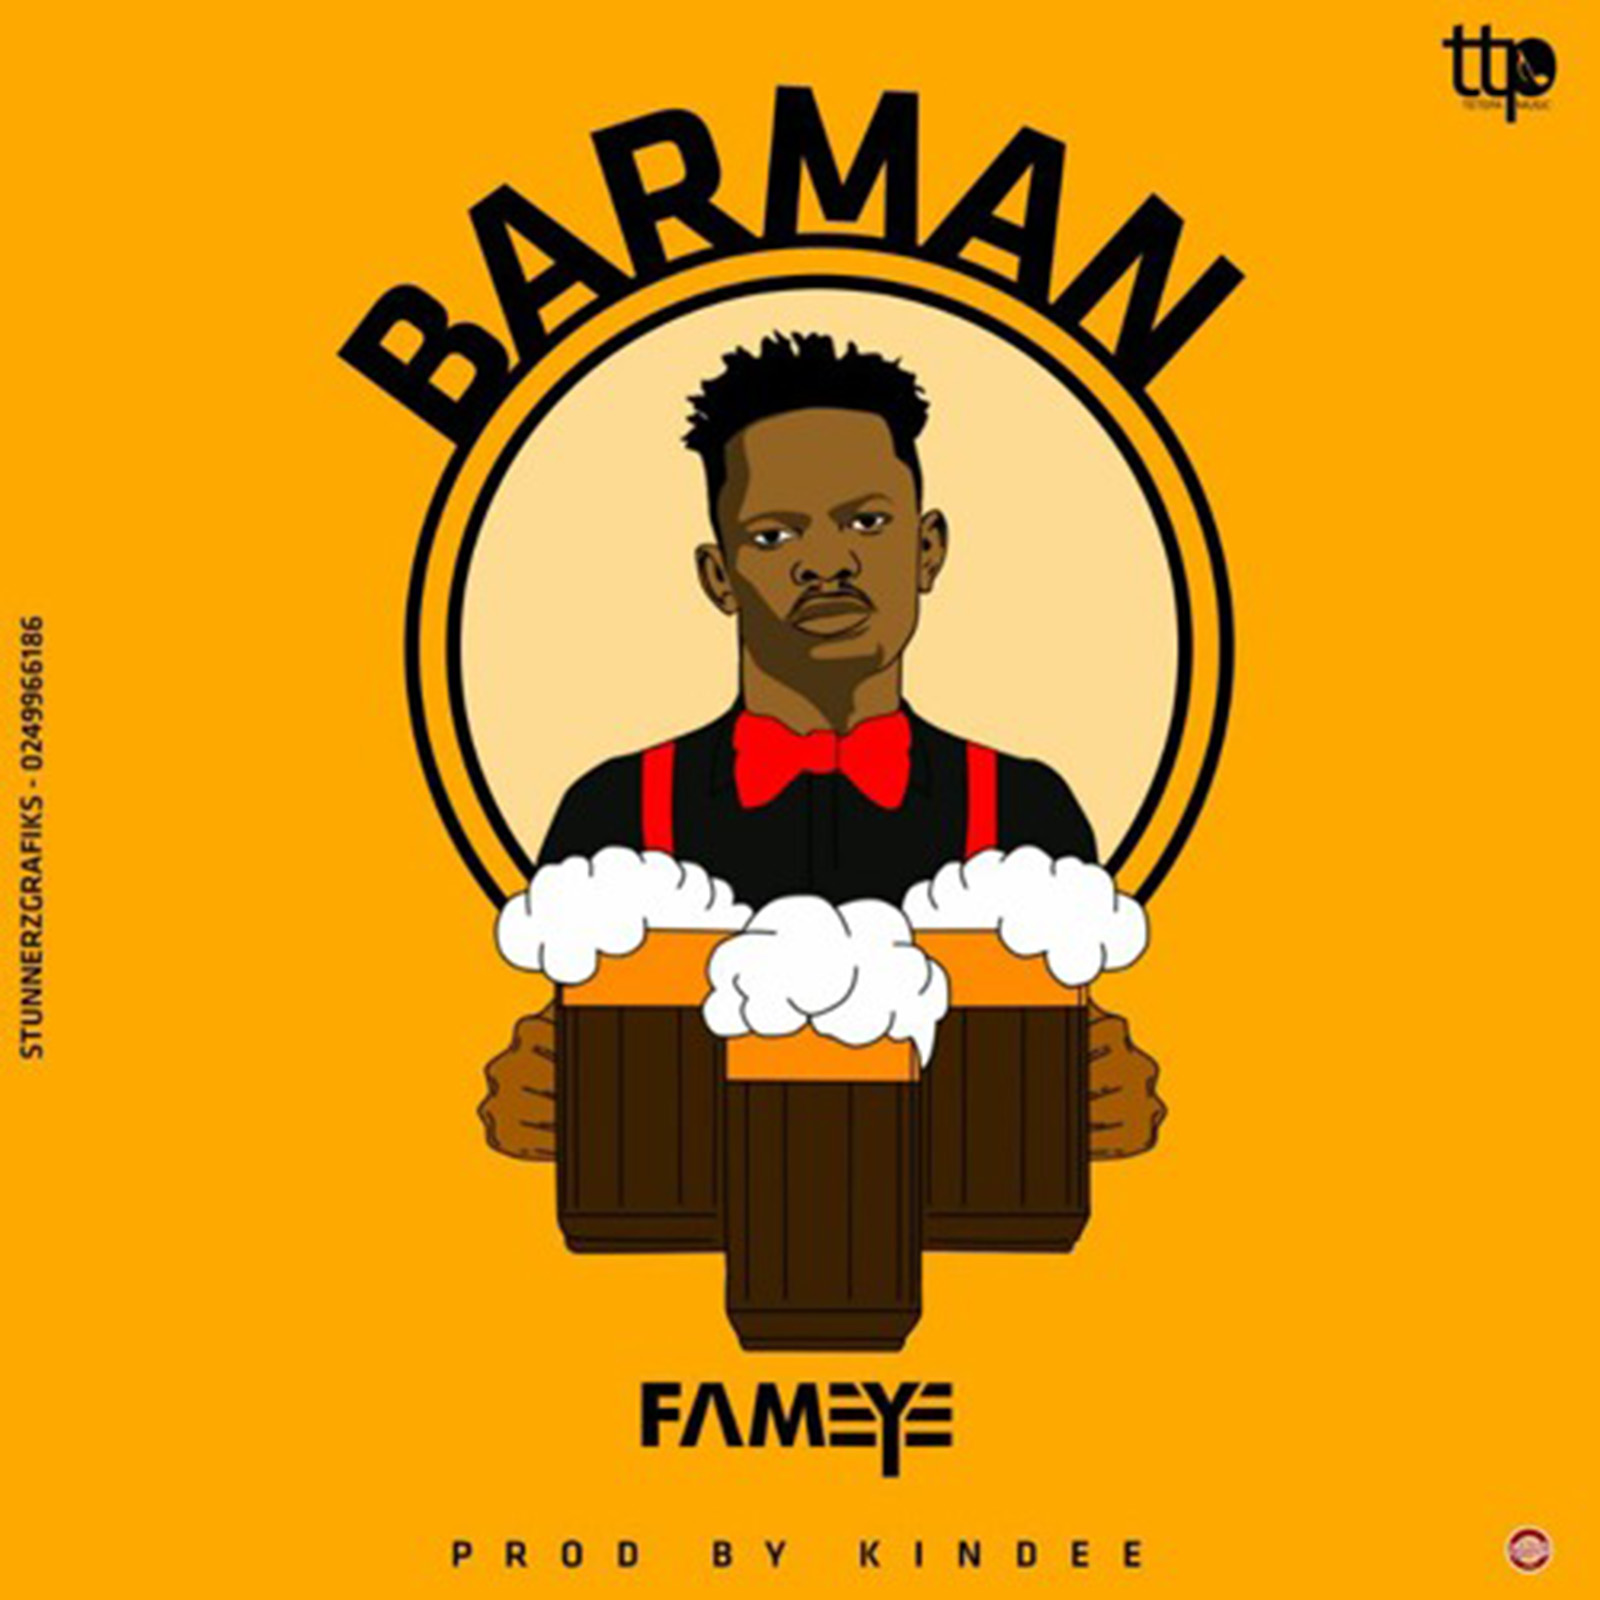 Barman by Fameye